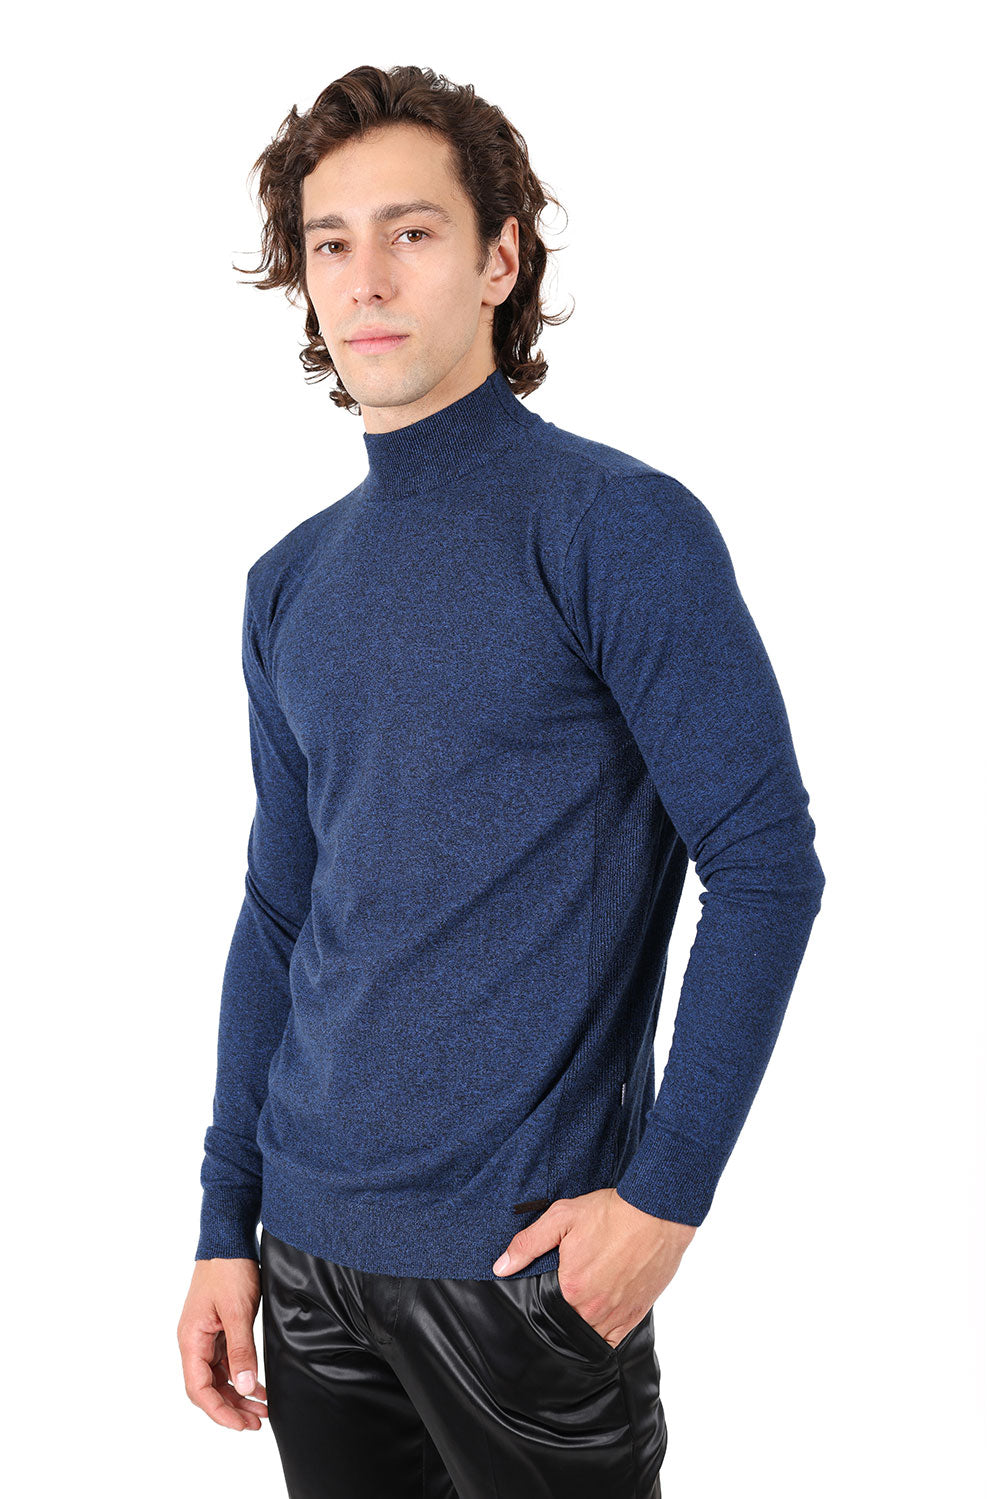 Men's Turtleneck Ribbed Solid Color Mock Turtleneck Sweater 2LS2103 Navy Royal